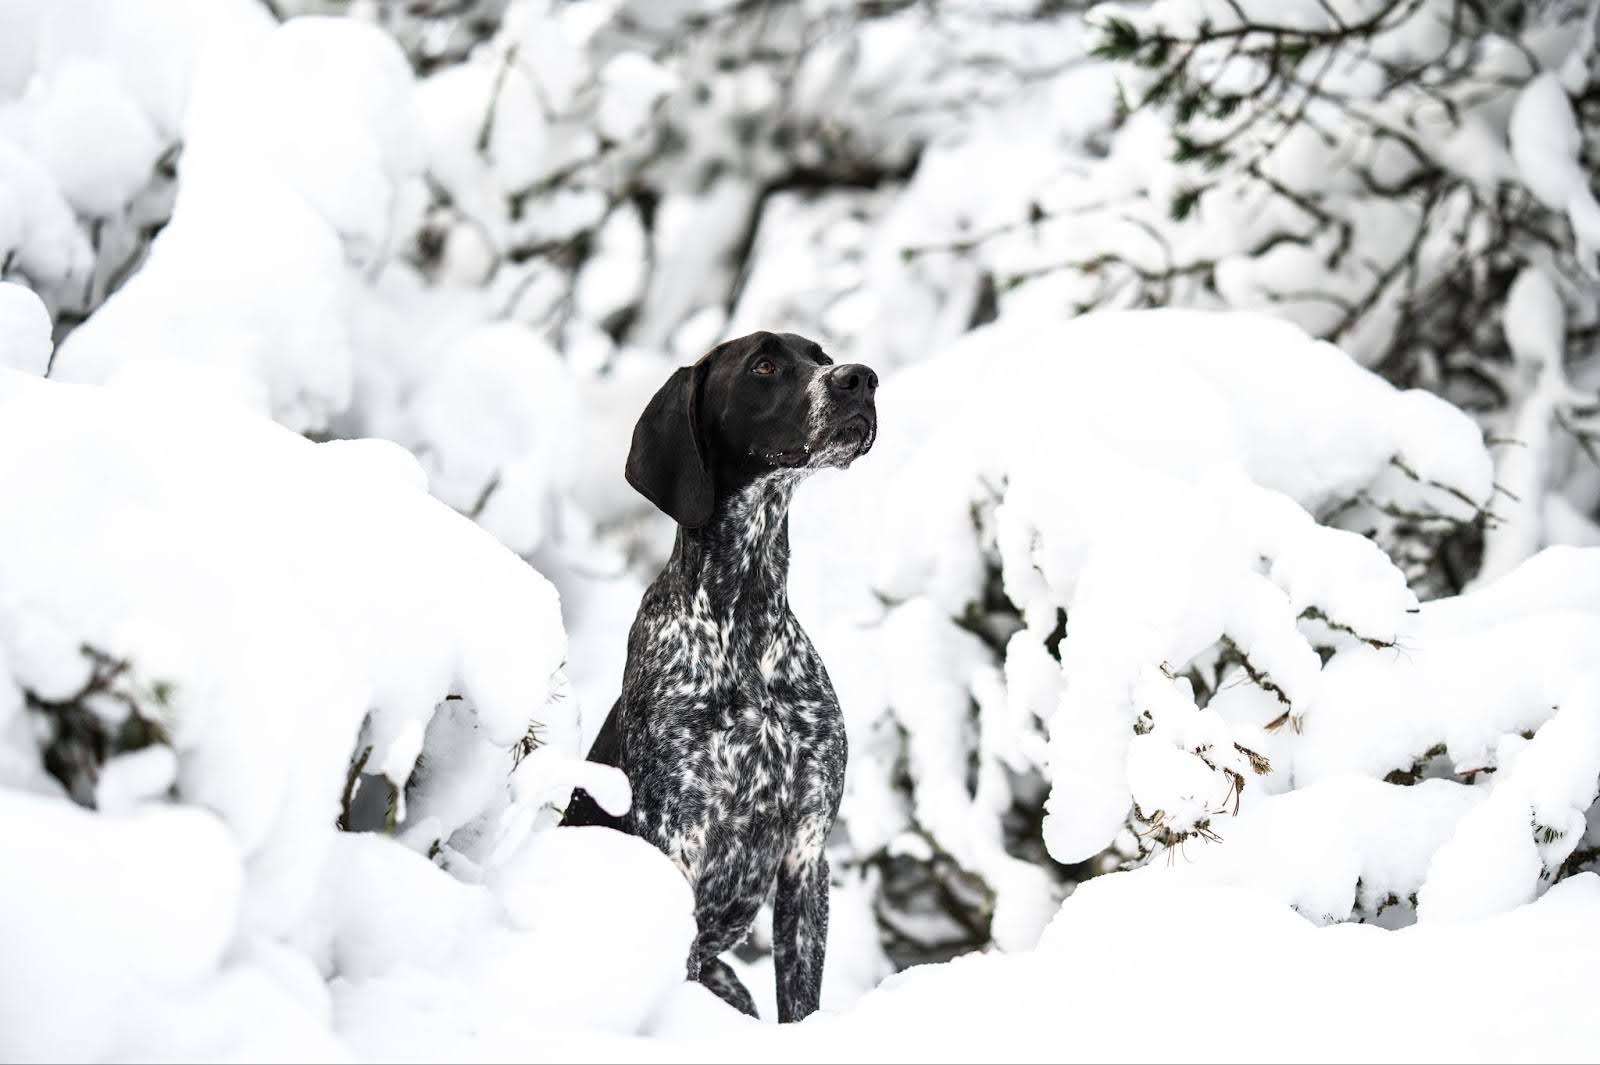 German shorthair pointer standing in snow, looking alert and energetic.